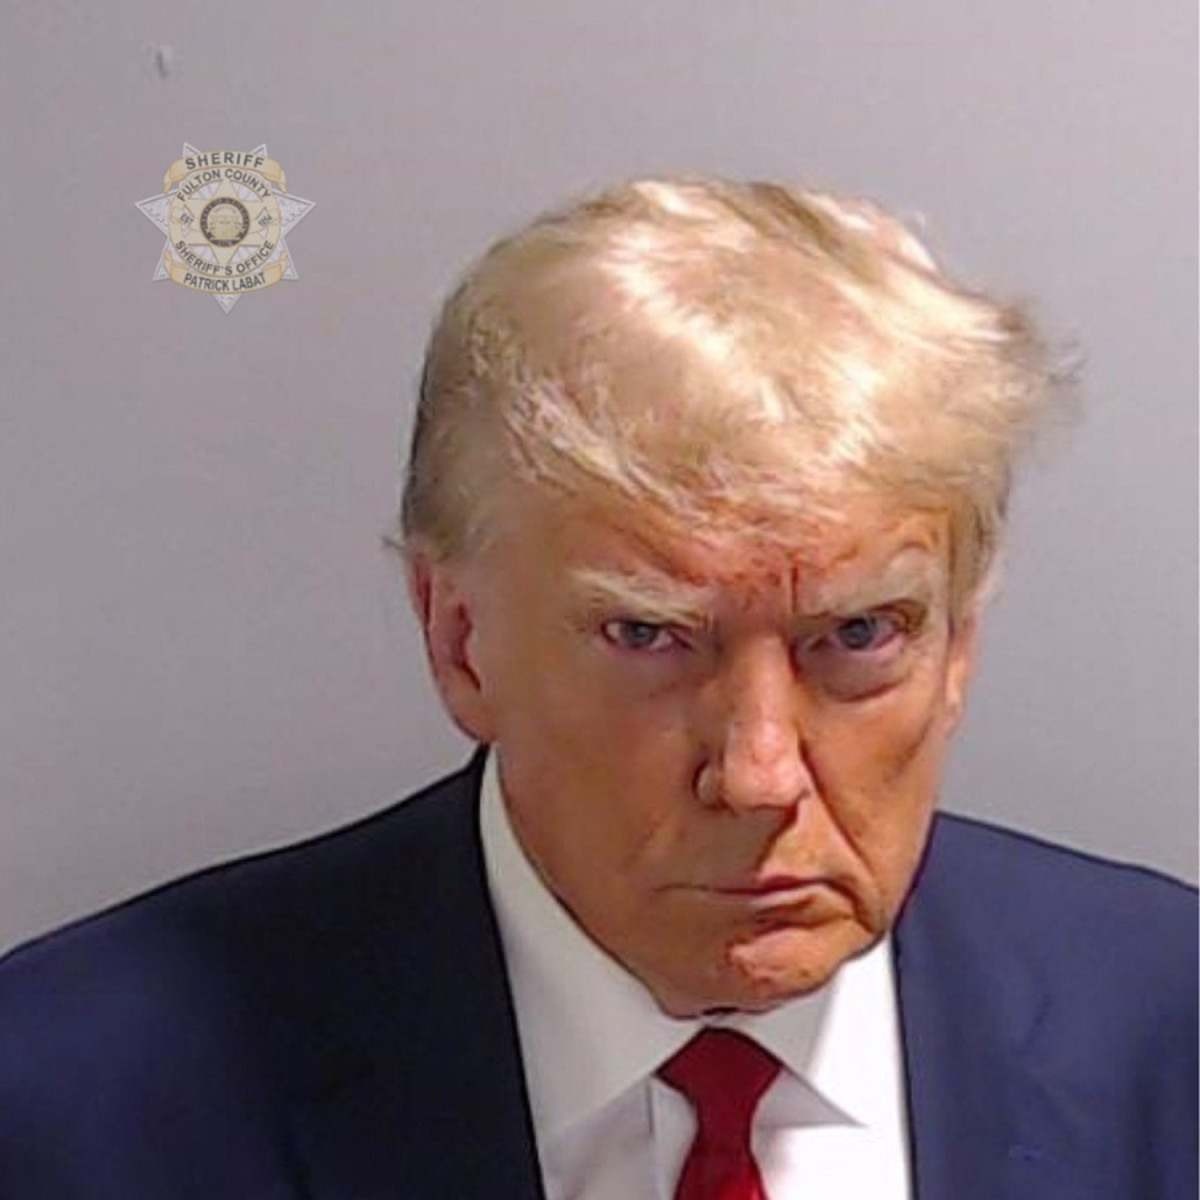 Justiça dos EUA condena homem a 5 anos de prisão por divulgar documentos fiscais de Trump